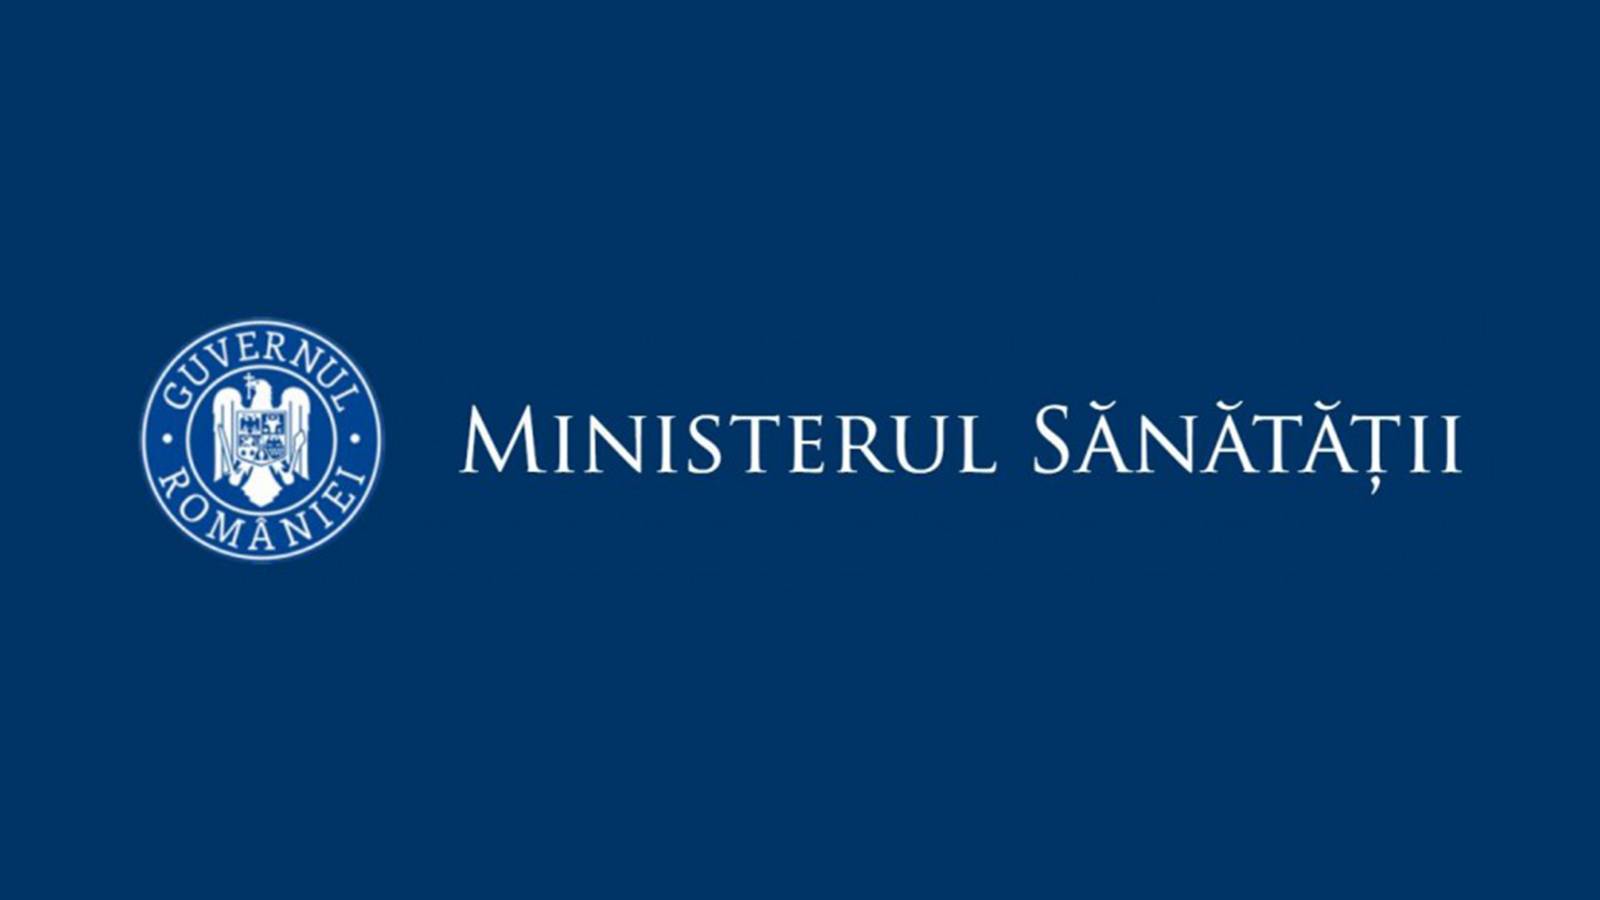 Ministerul Sanatatii Ratele de Incidenta pentru Judetele din Toata Romania